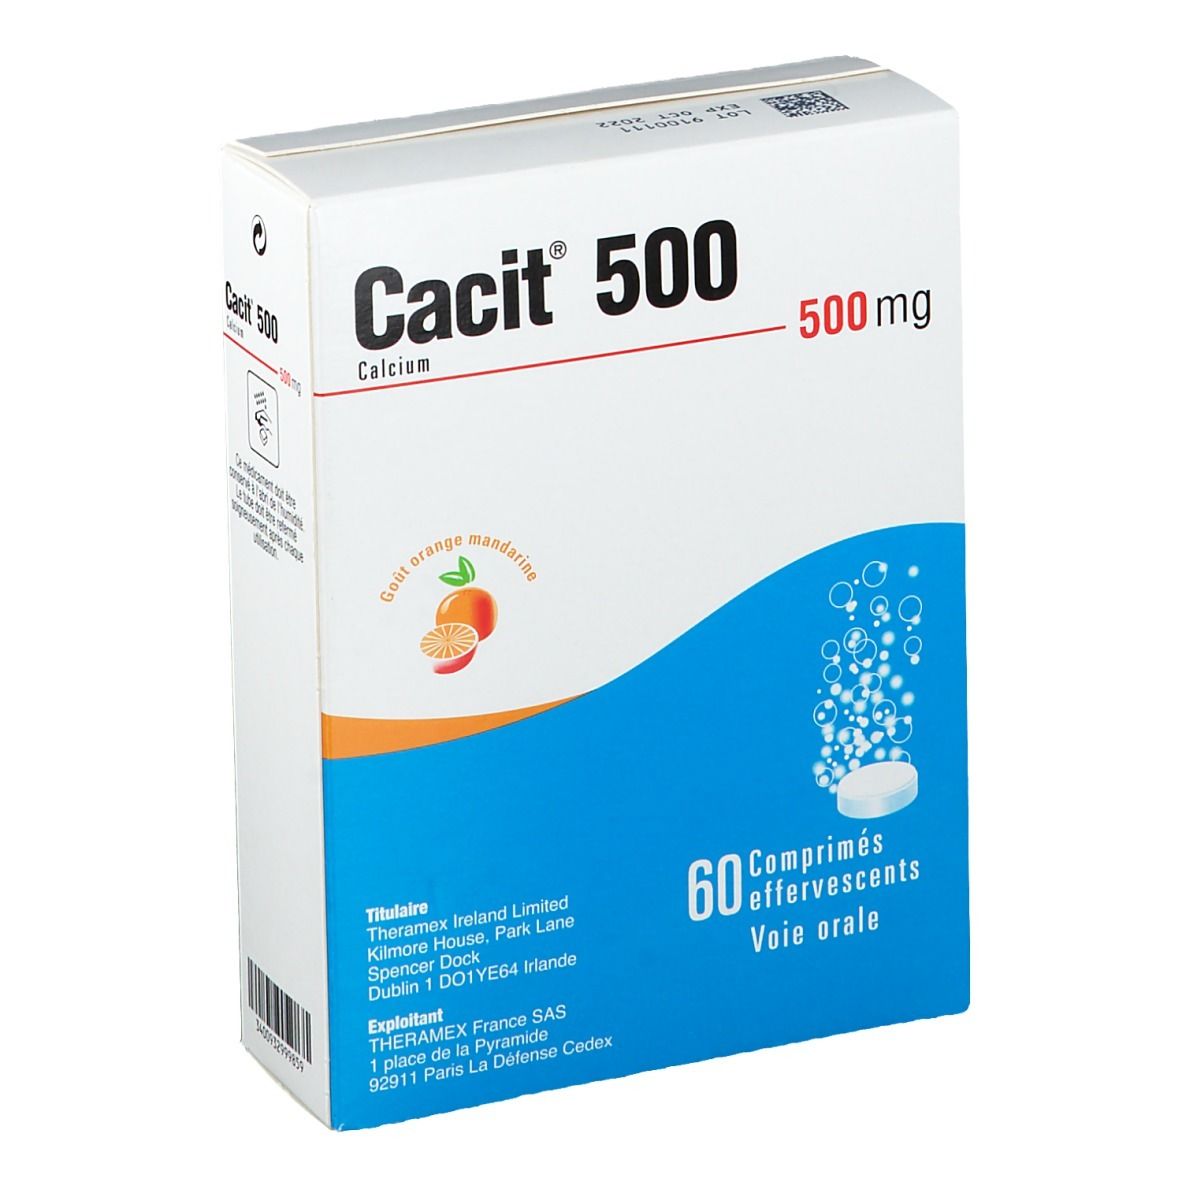 Cacit® 500 Calcium 500 mg